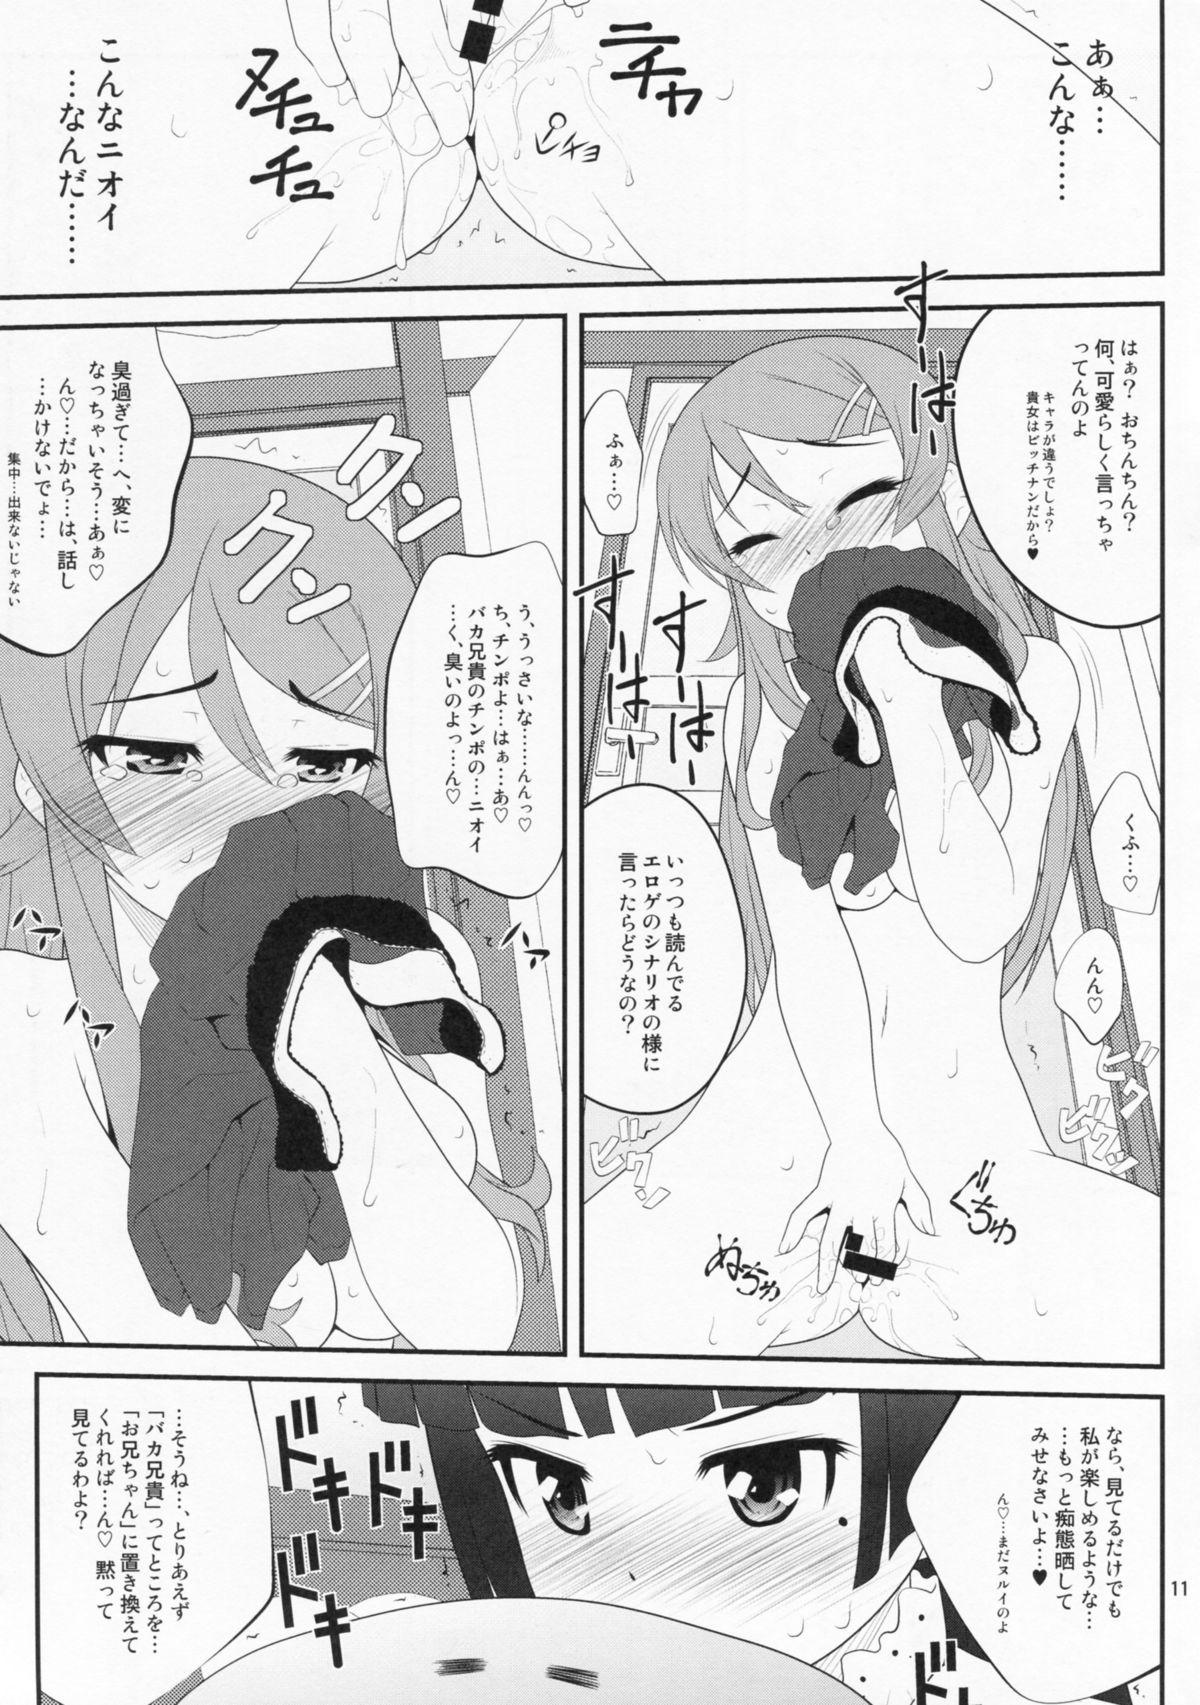 Toilet Super Kunka-Kunka Time - Ore no imouto ga konna ni kawaii wake ga nai Nipples - Page 10